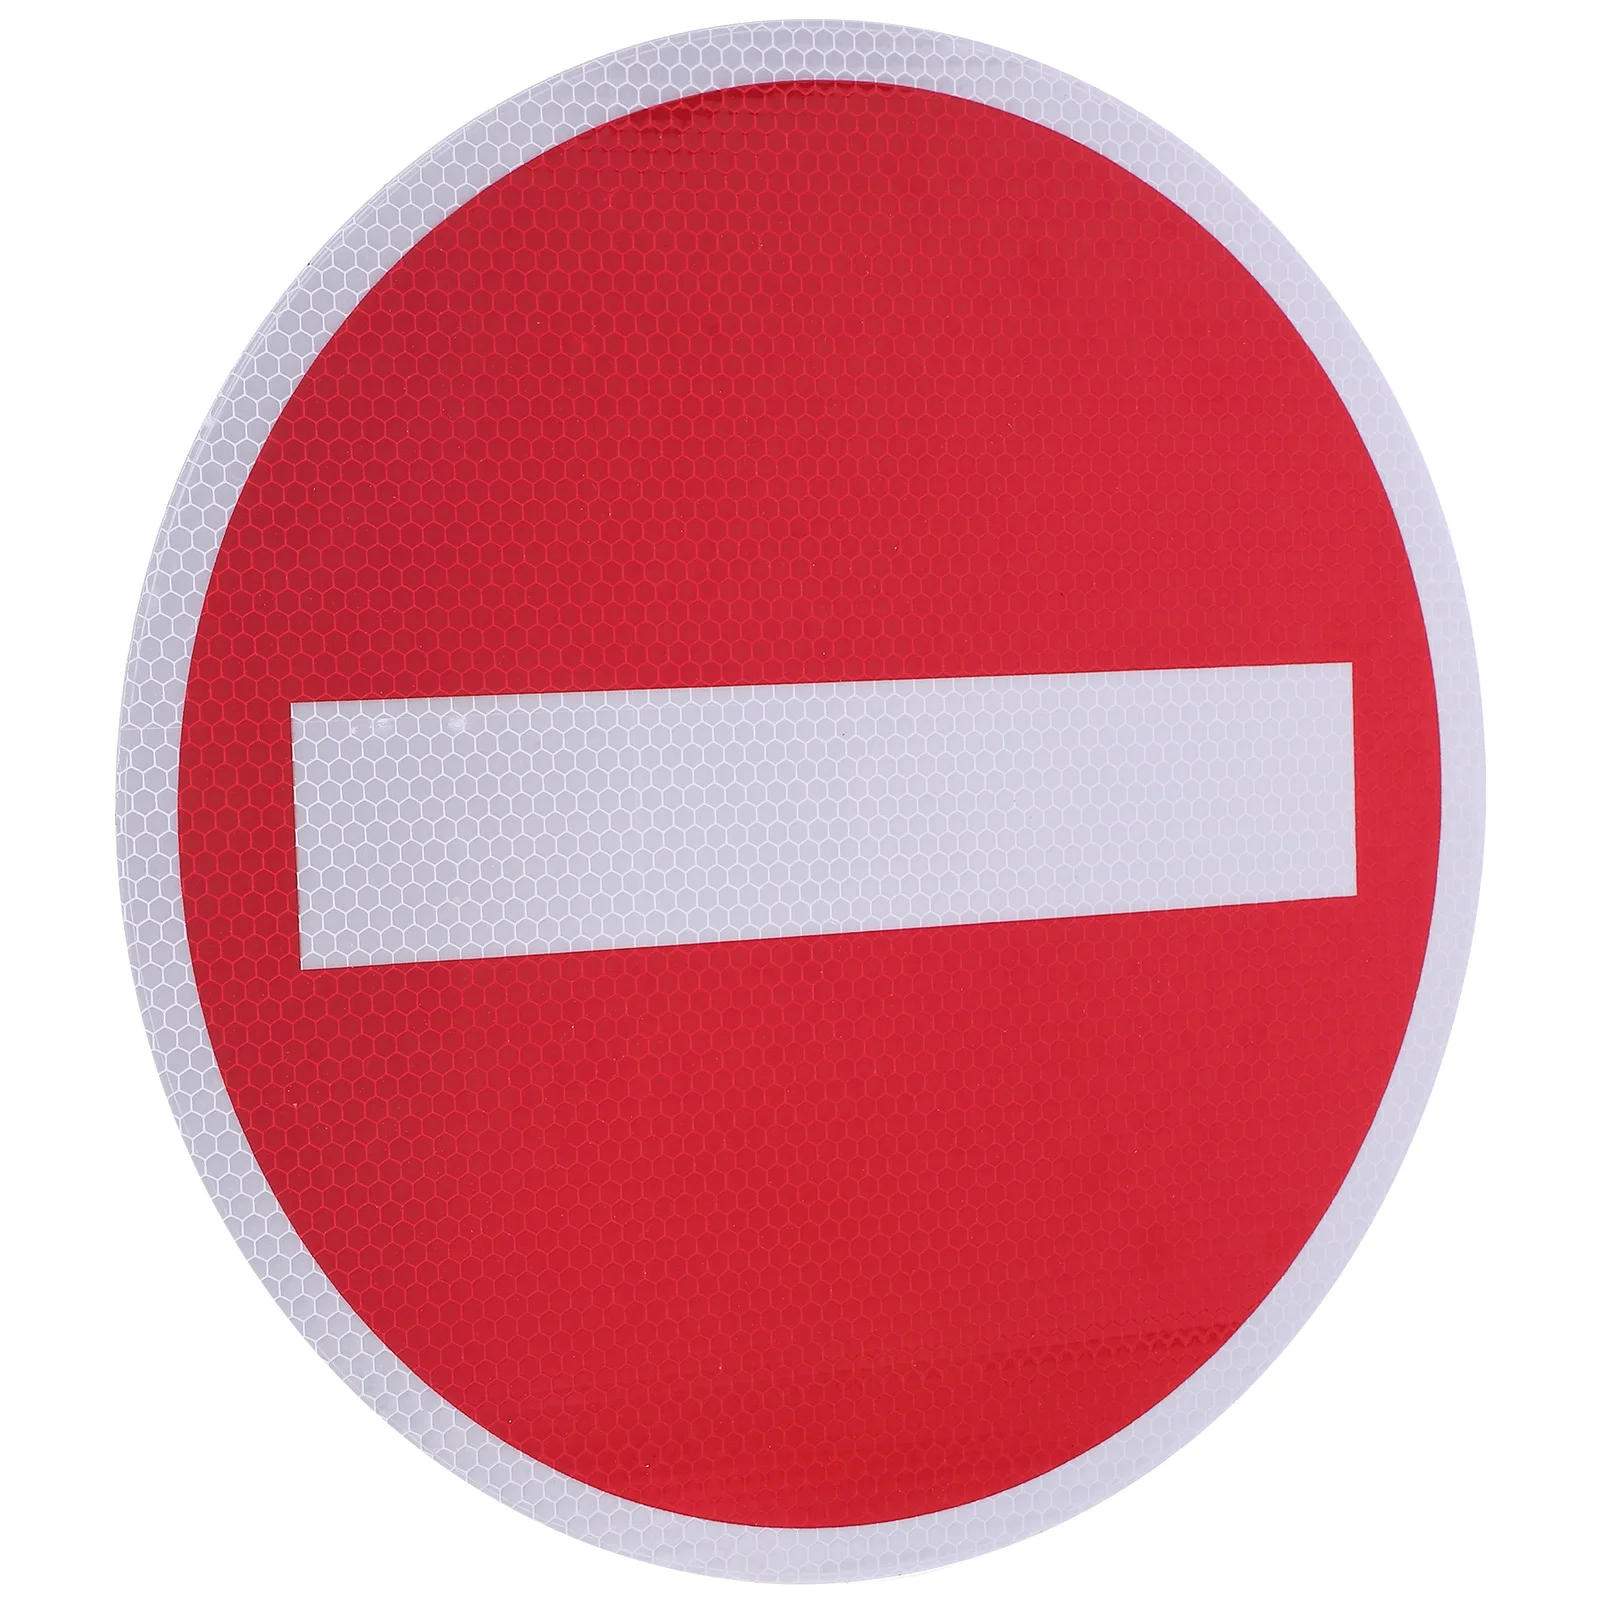 

Нет прохождения знаков входа, не входит в стоп-сигнал, безопасная Красная дорога